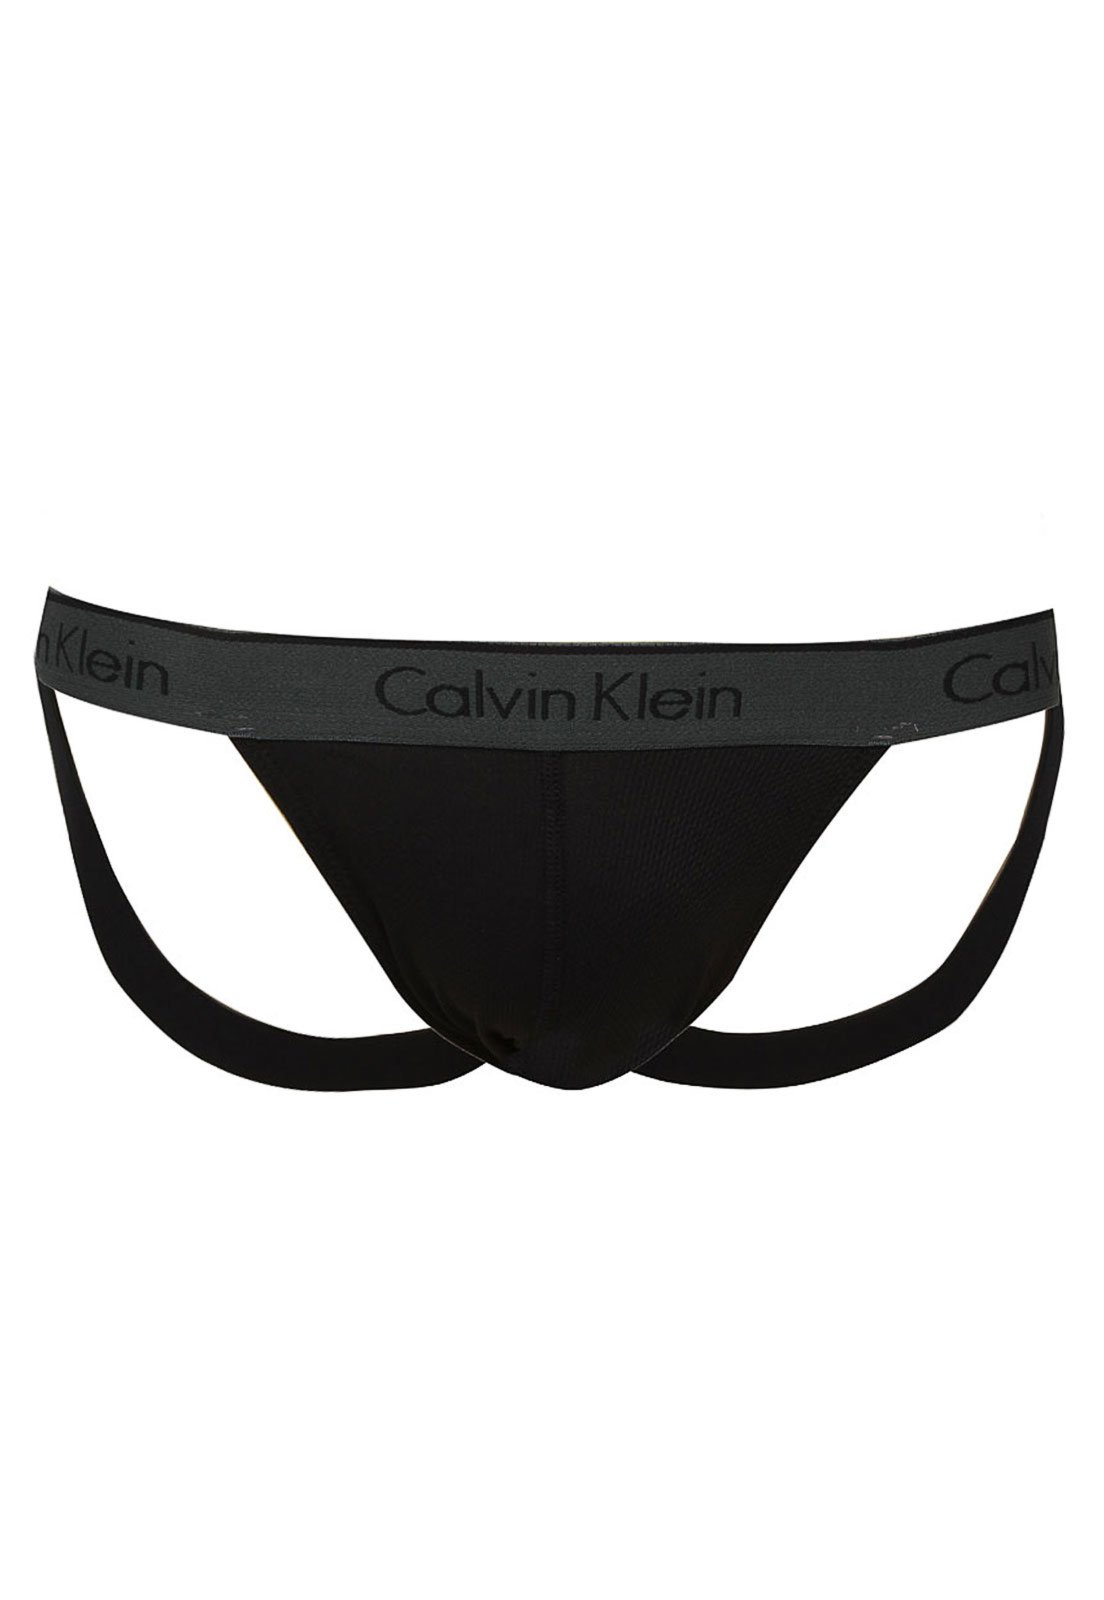 Cueca Calvin Klein Underwear Jockstrap Elástico Preta - Compre